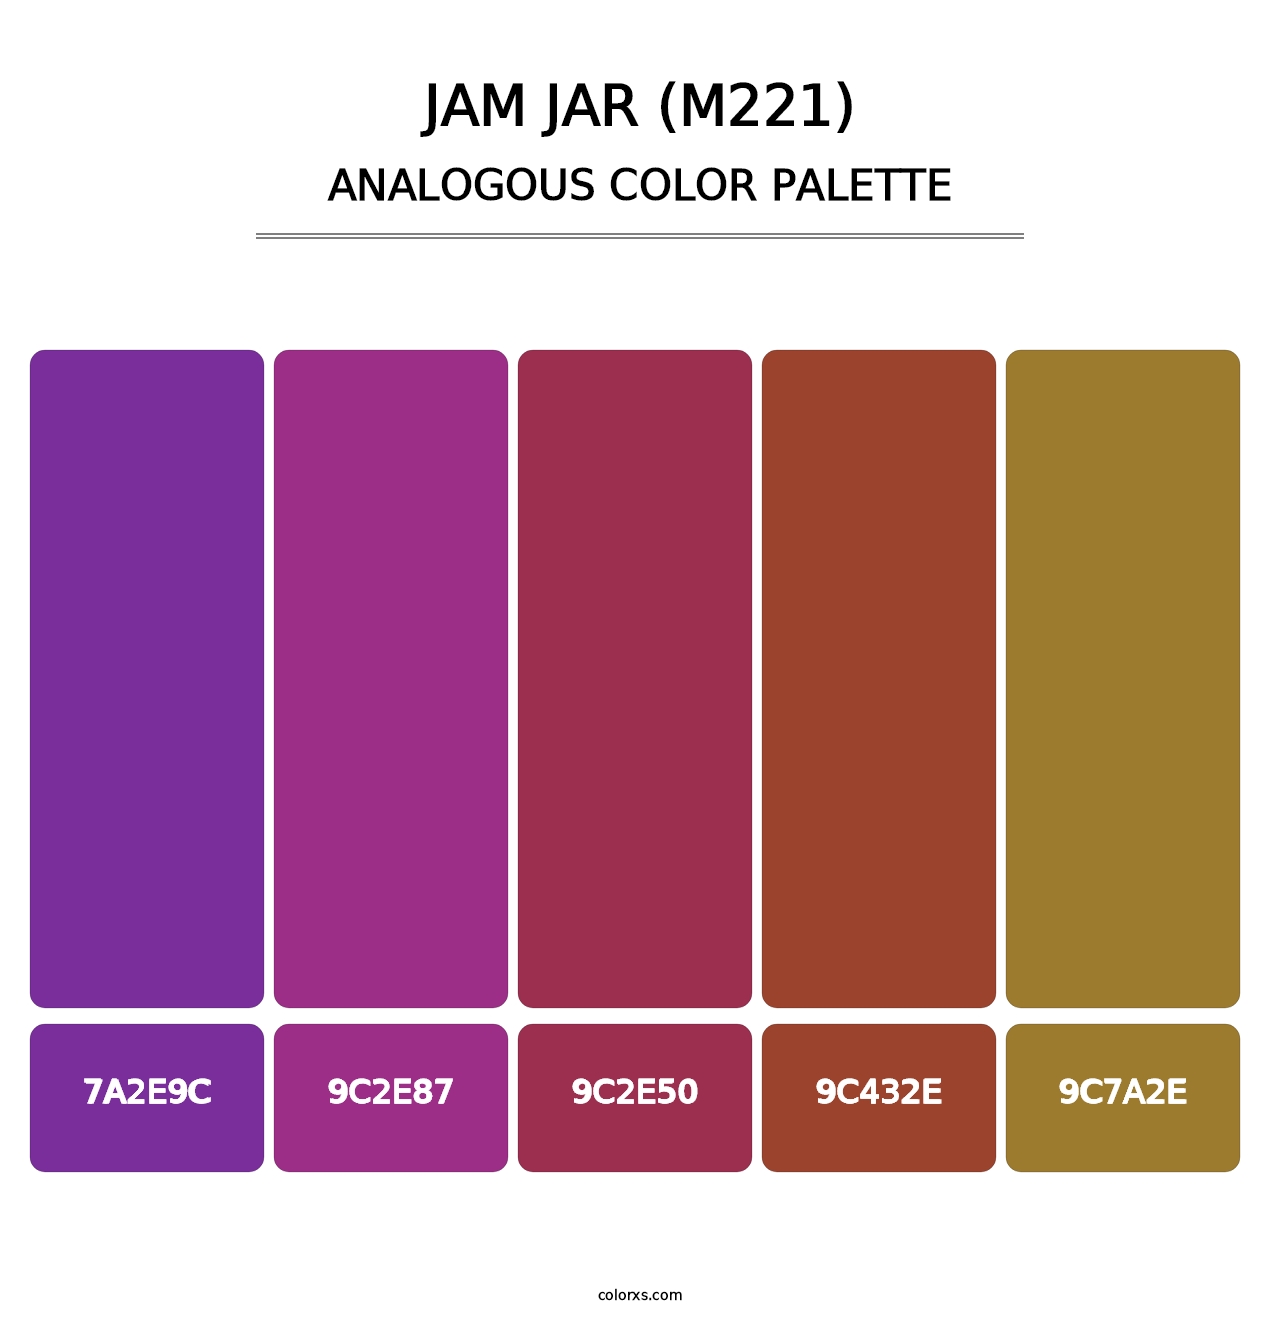 Jam Jar (M221) - Analogous Color Palette